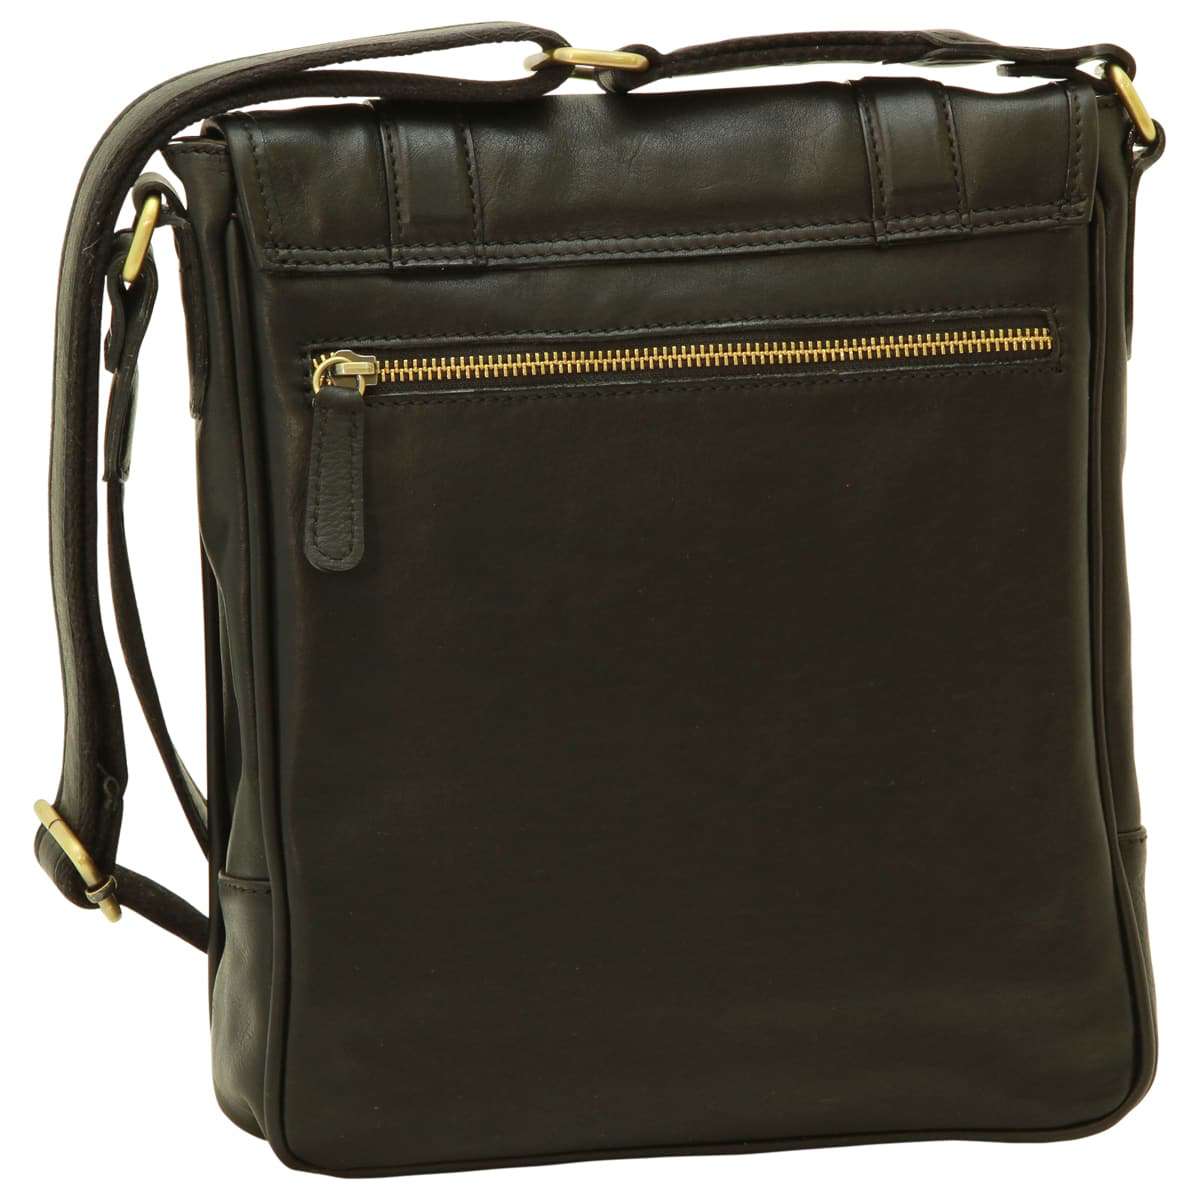 Soft Calfskin Leather Satchel Bag - Black | 031091NE US | Old Angler Firenze